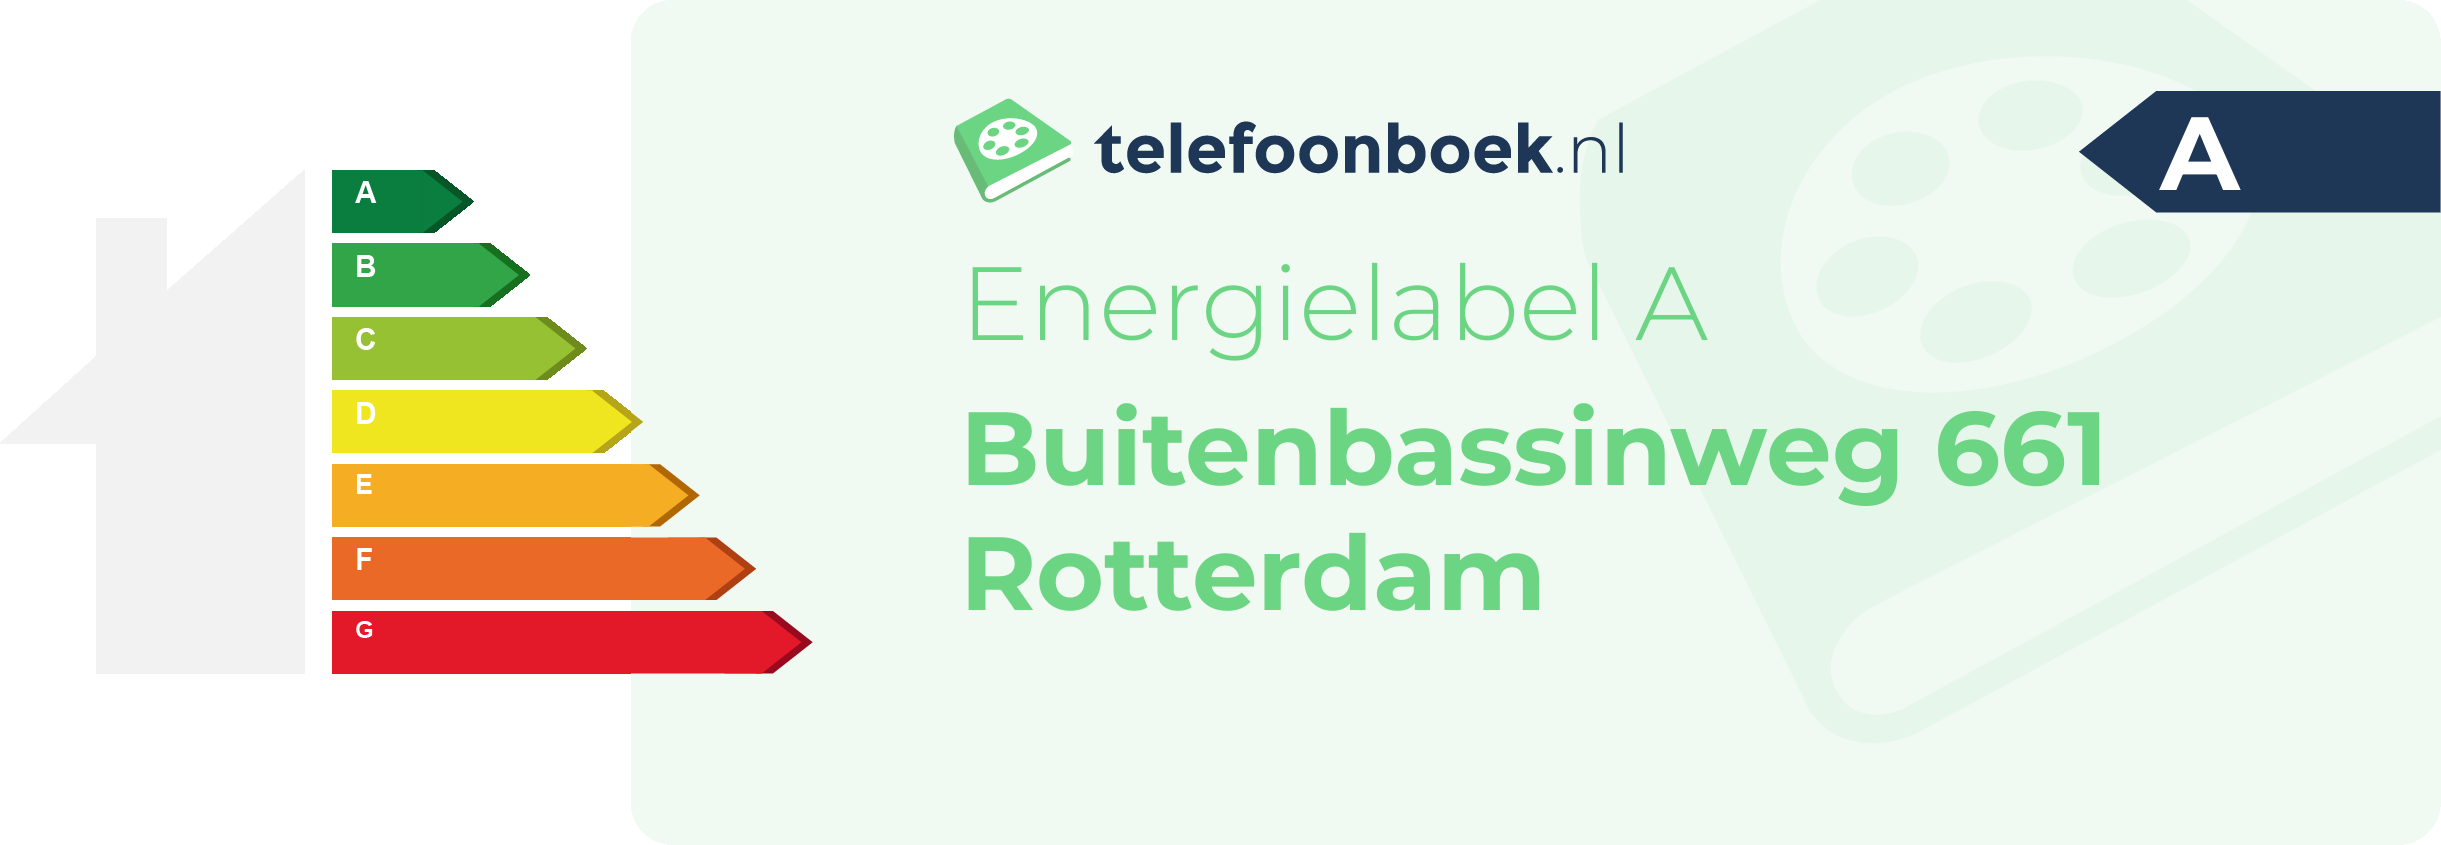 Energielabel Buitenbassinweg 661 Rotterdam